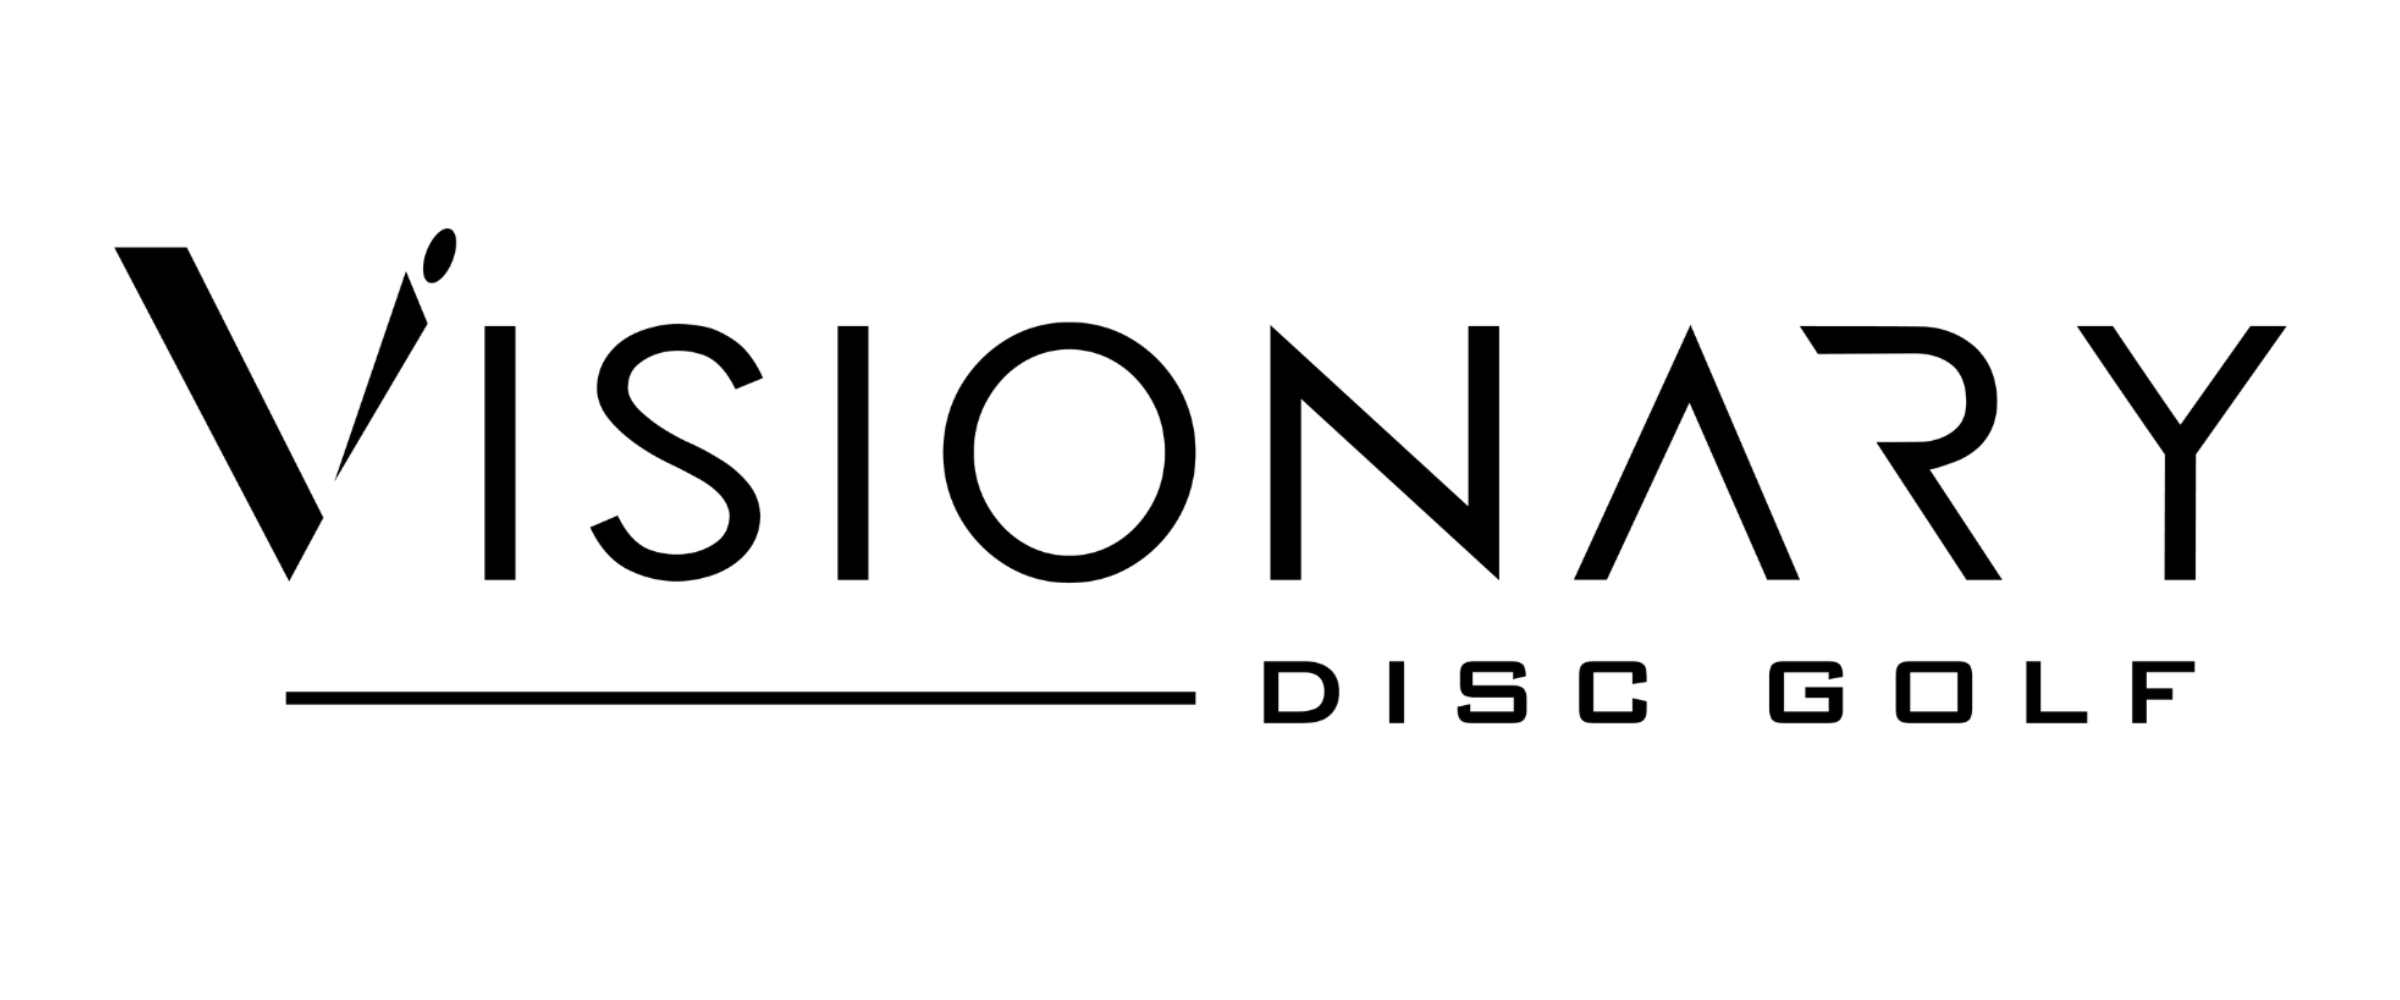 Visionary Disc Golf Sponsor Logo